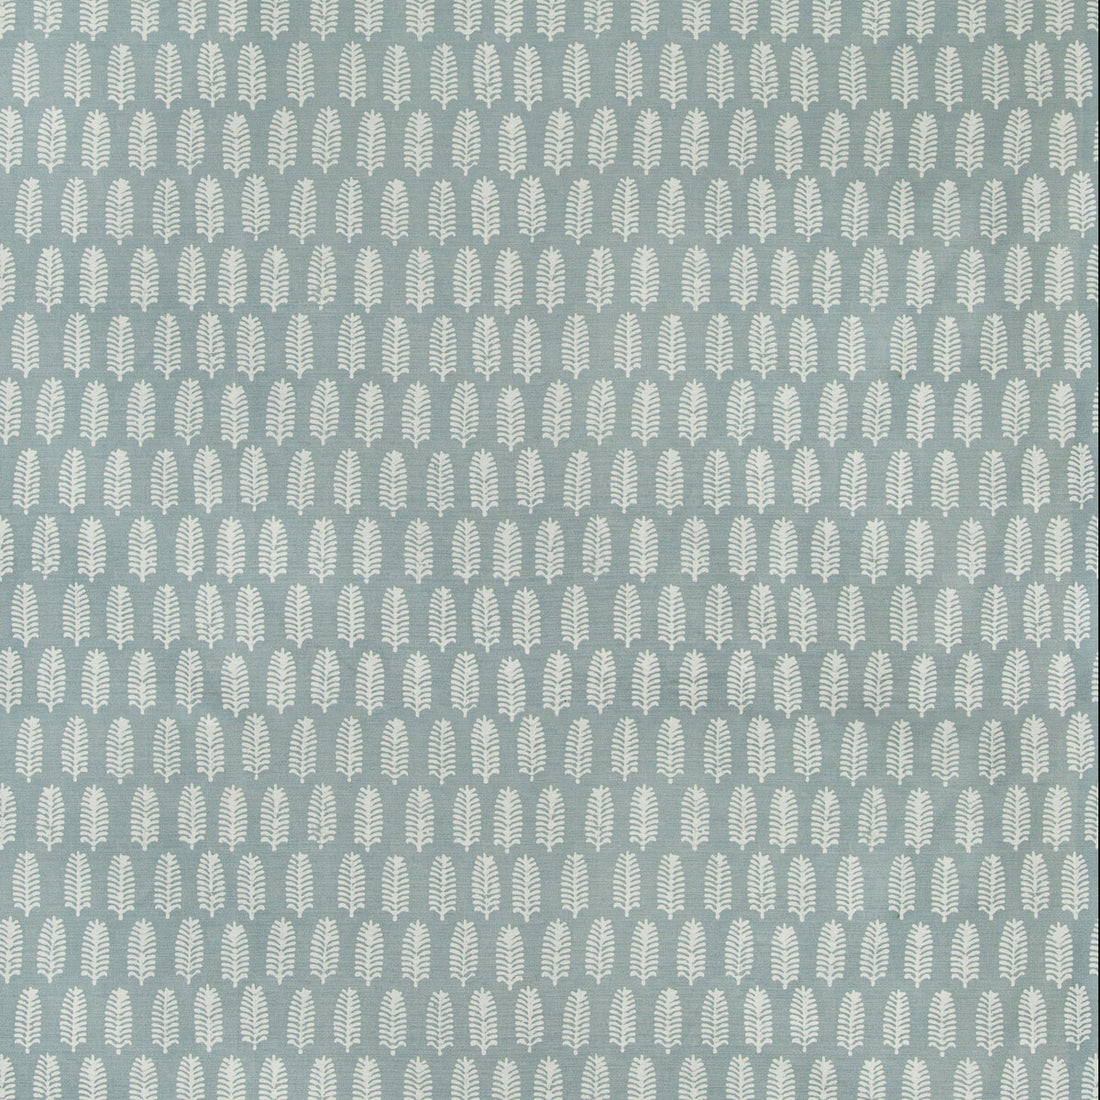 Palmier fabric in seafoam color - pattern 2019127.113.0 - by Lee Jofa